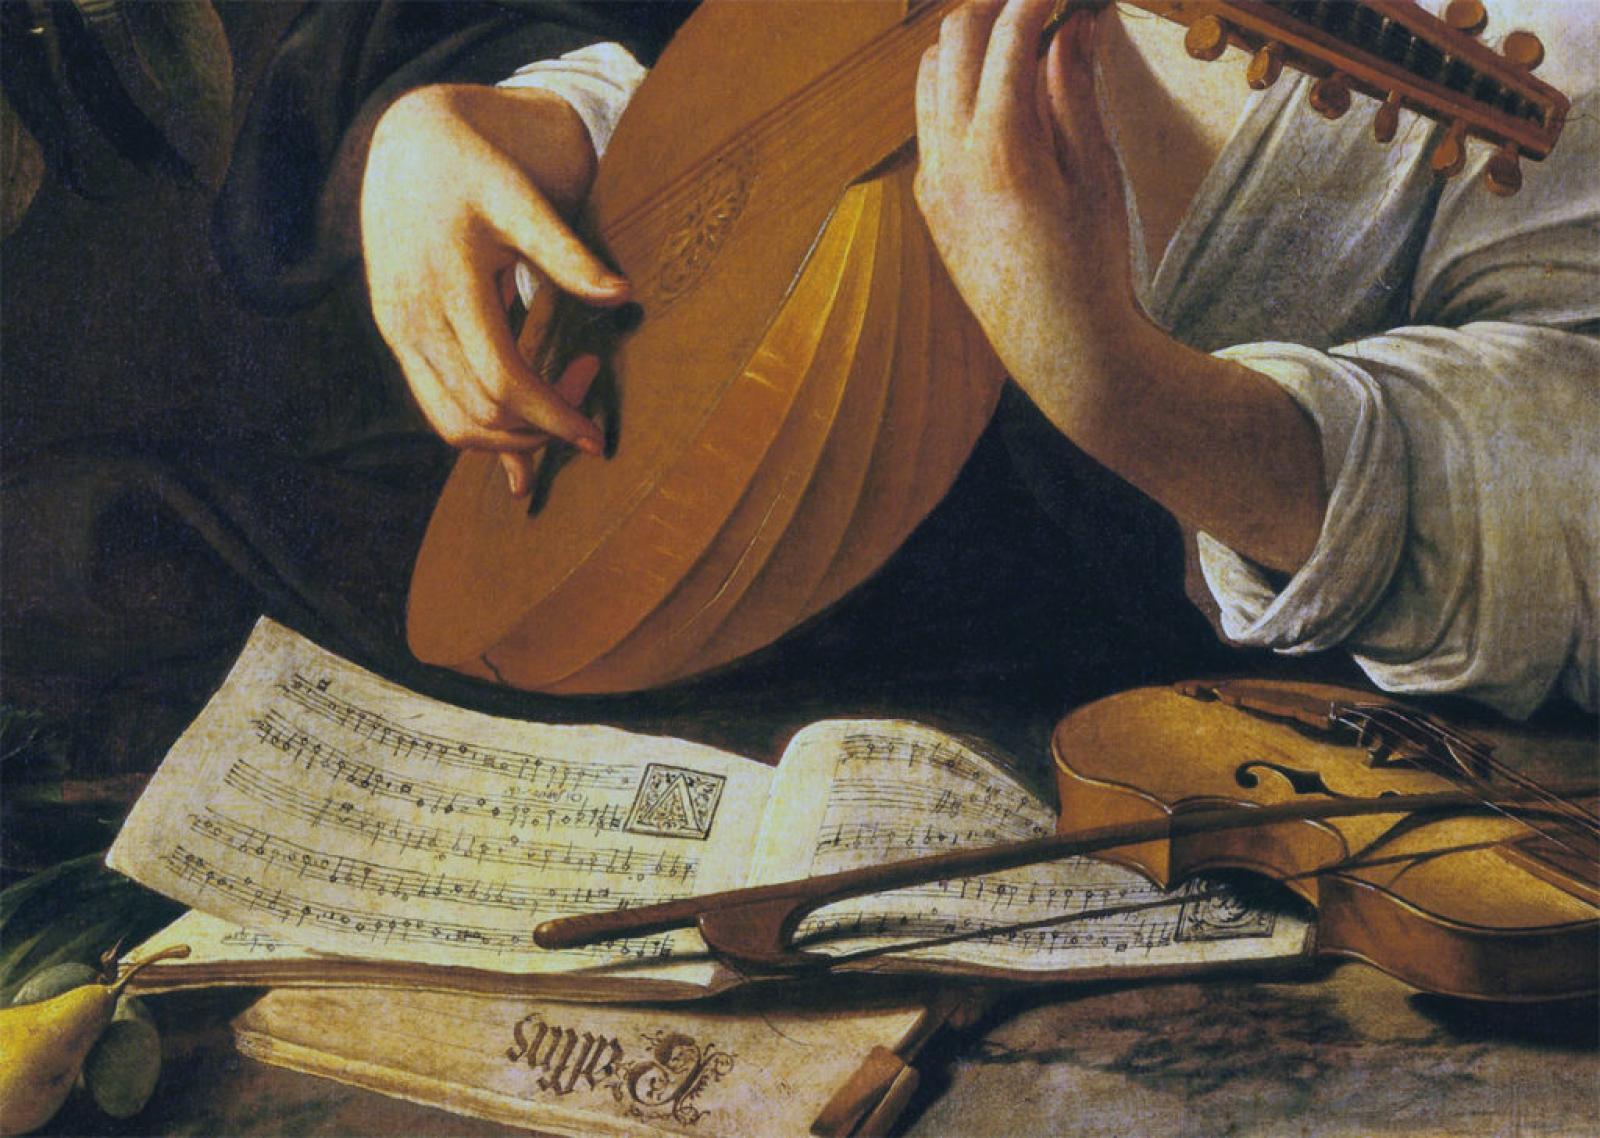 Suonatore di liuto Caravaggio, dettaglio partiture